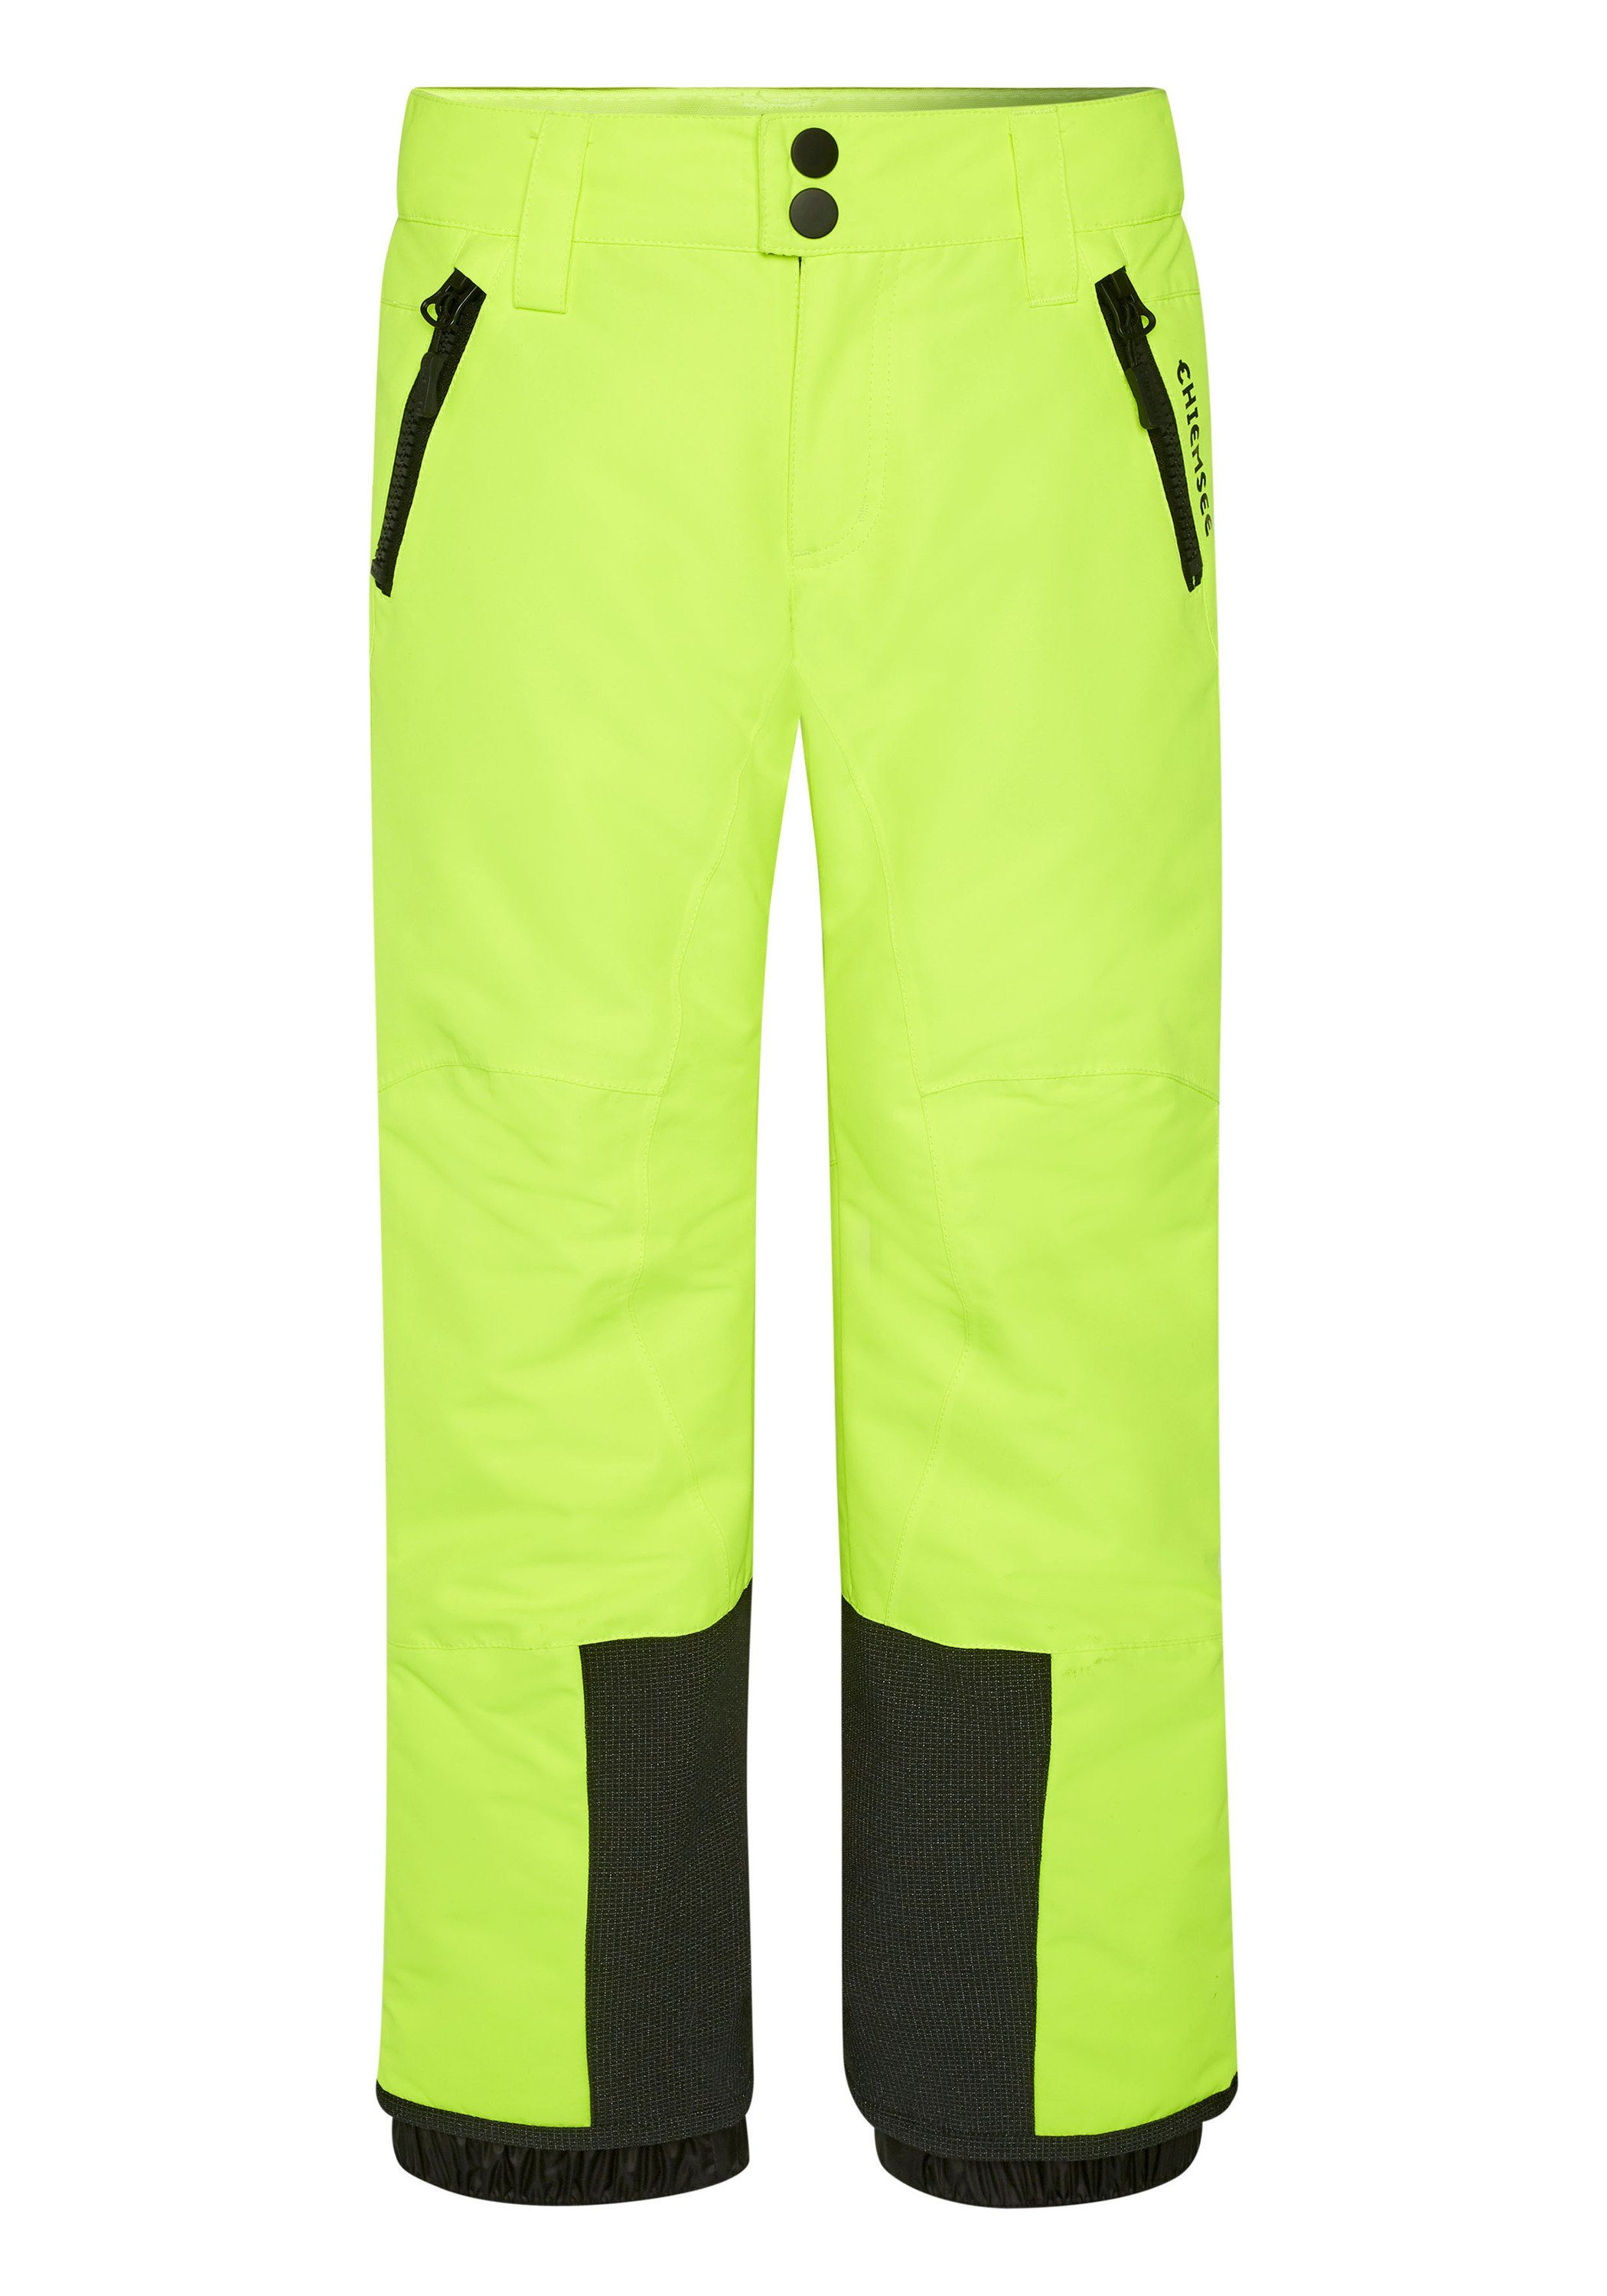 Chiemsee Sporthose Skihose mit PlusMinus Print am Bein 1 gelb | Turnhosen